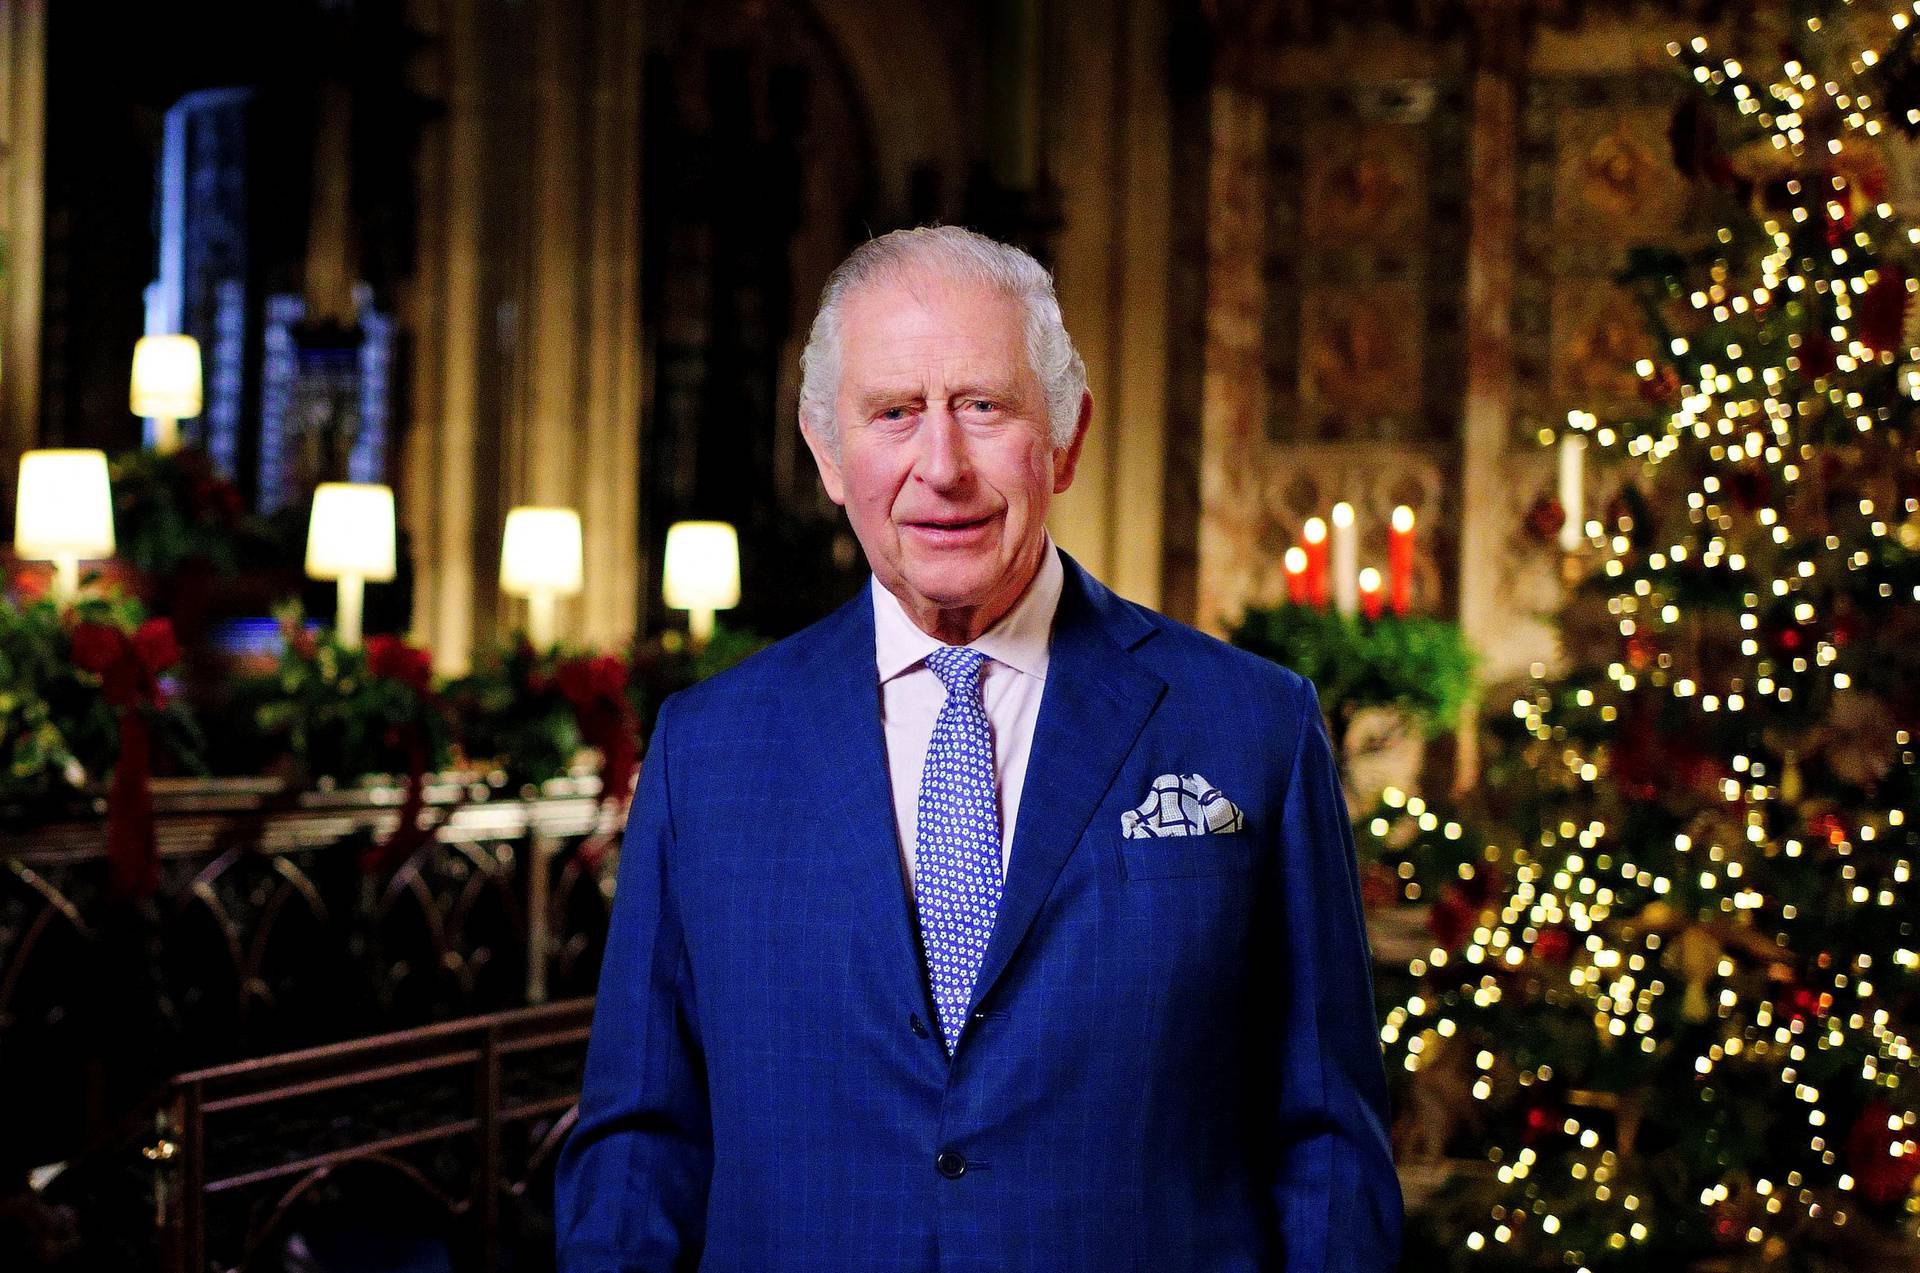 King's Christmas broadcast